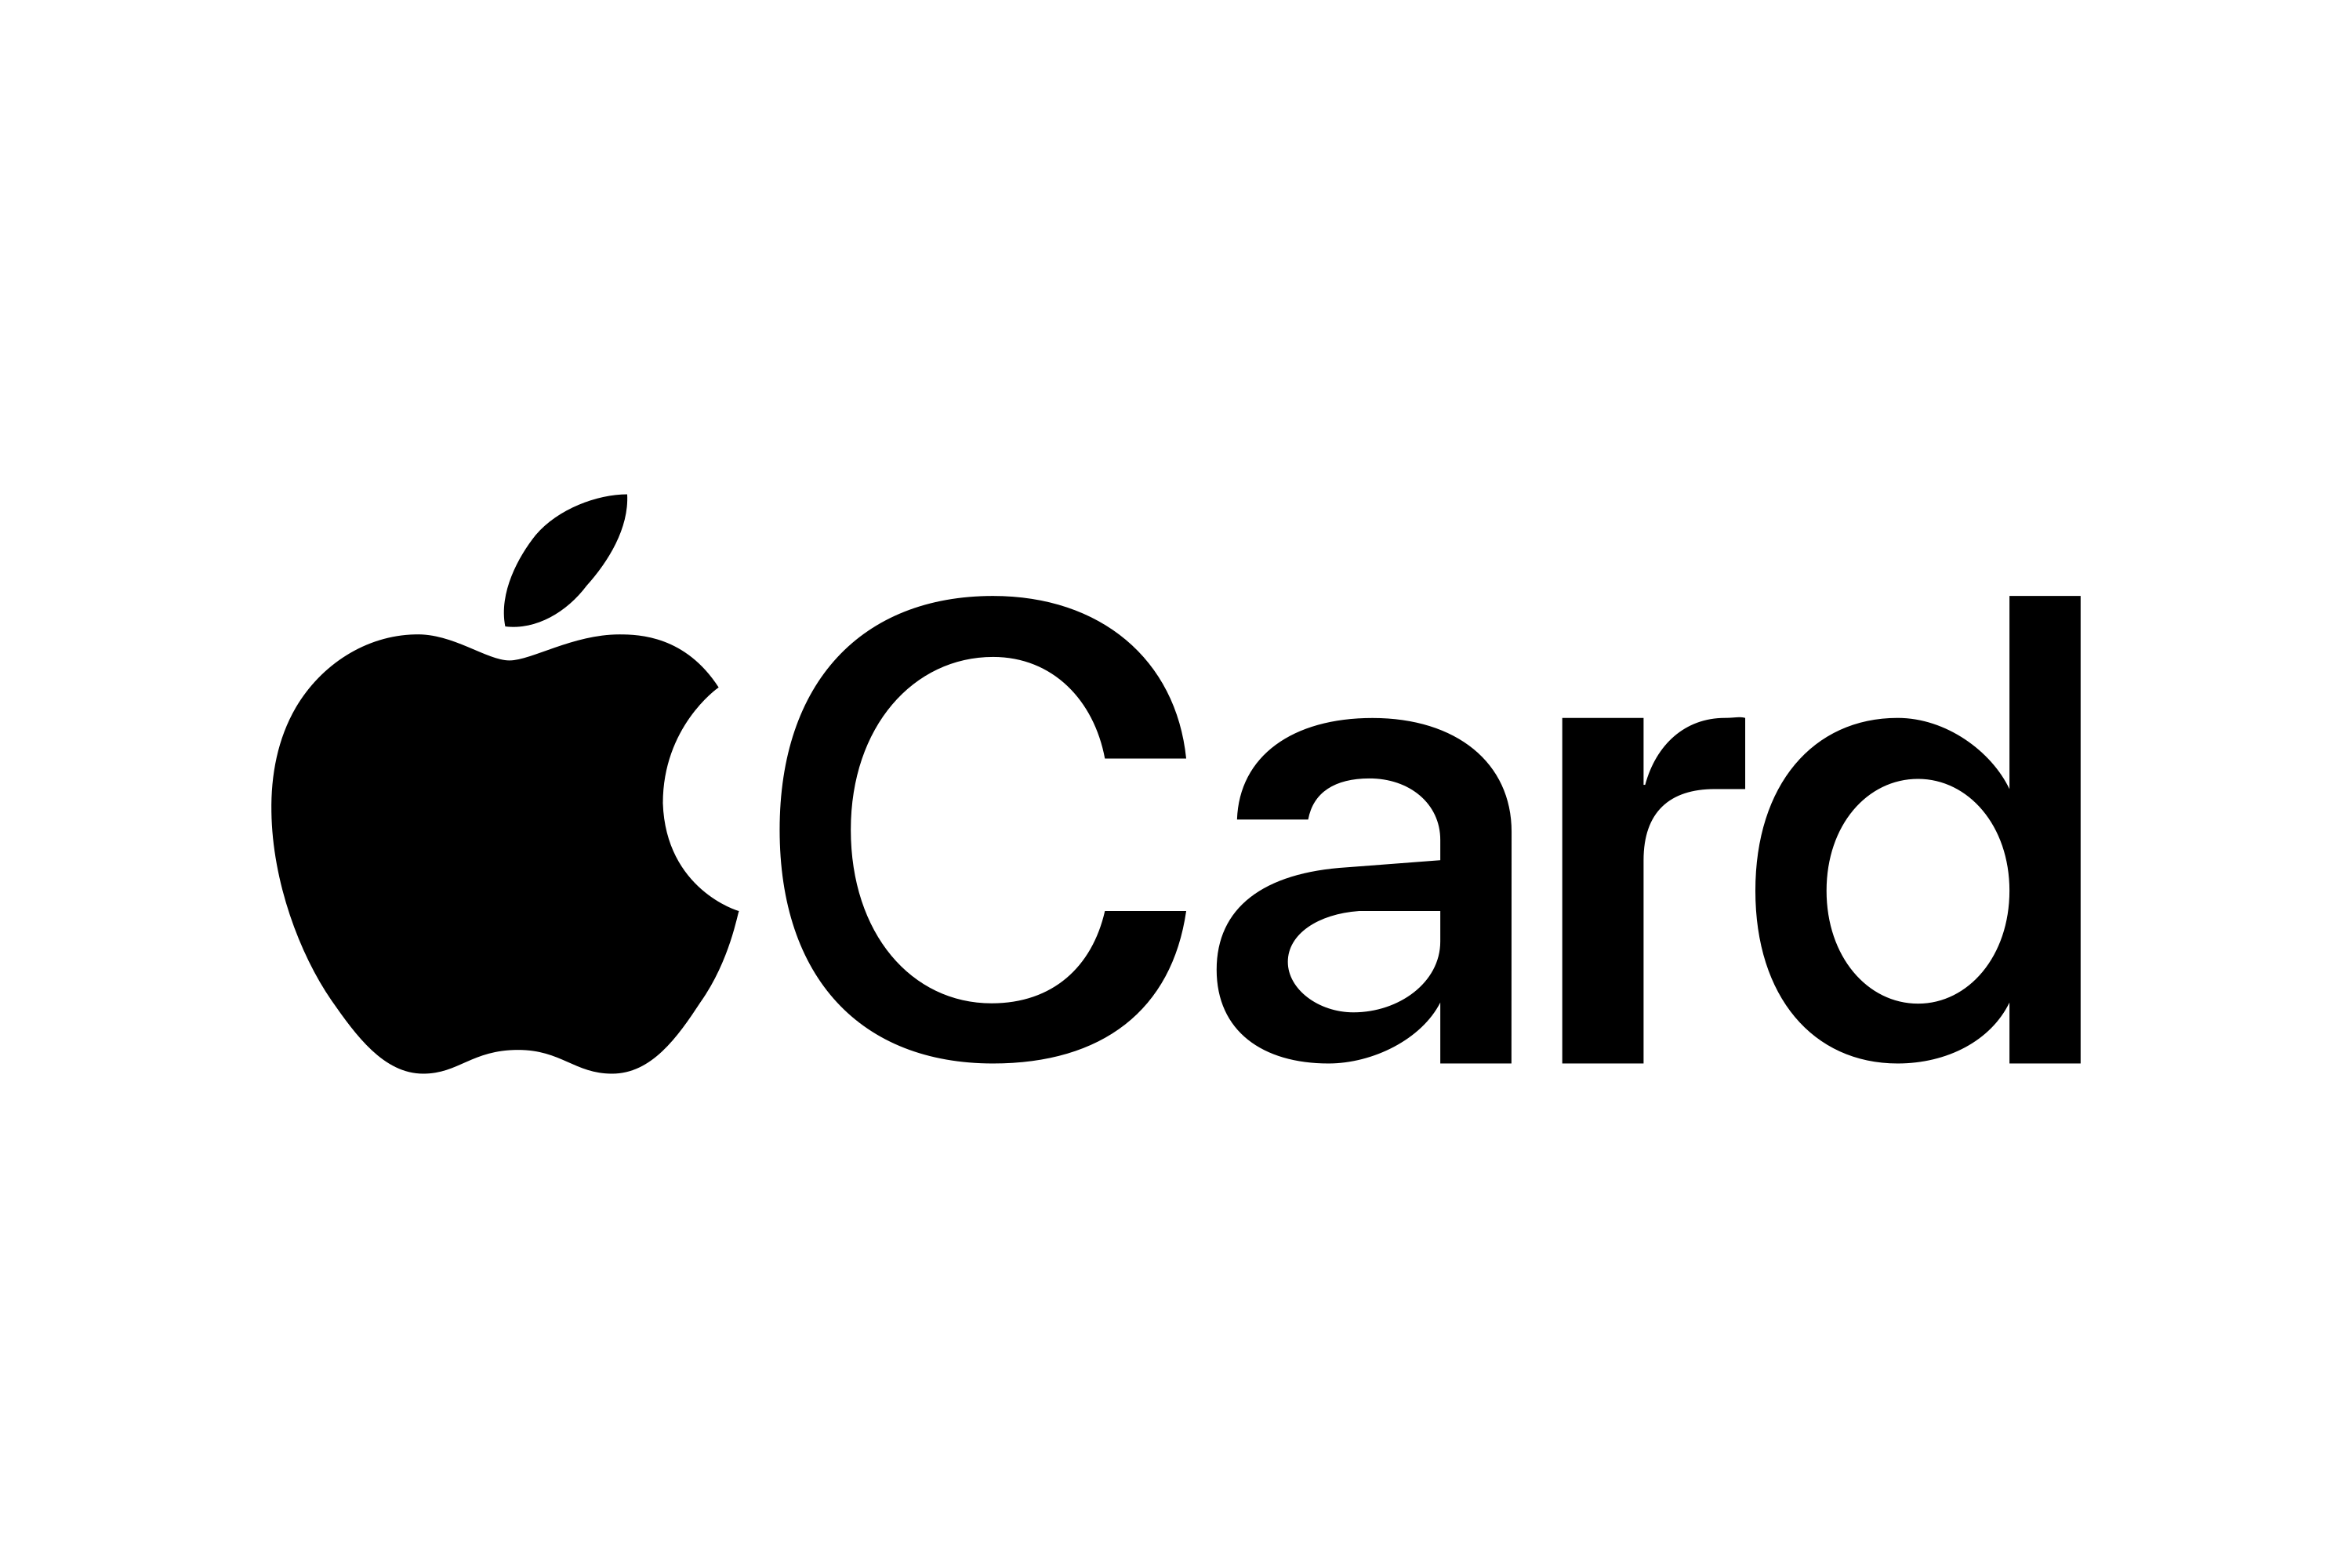 Download Apple Card Logo in SVG Vector or PNG File Format - Logo.wine